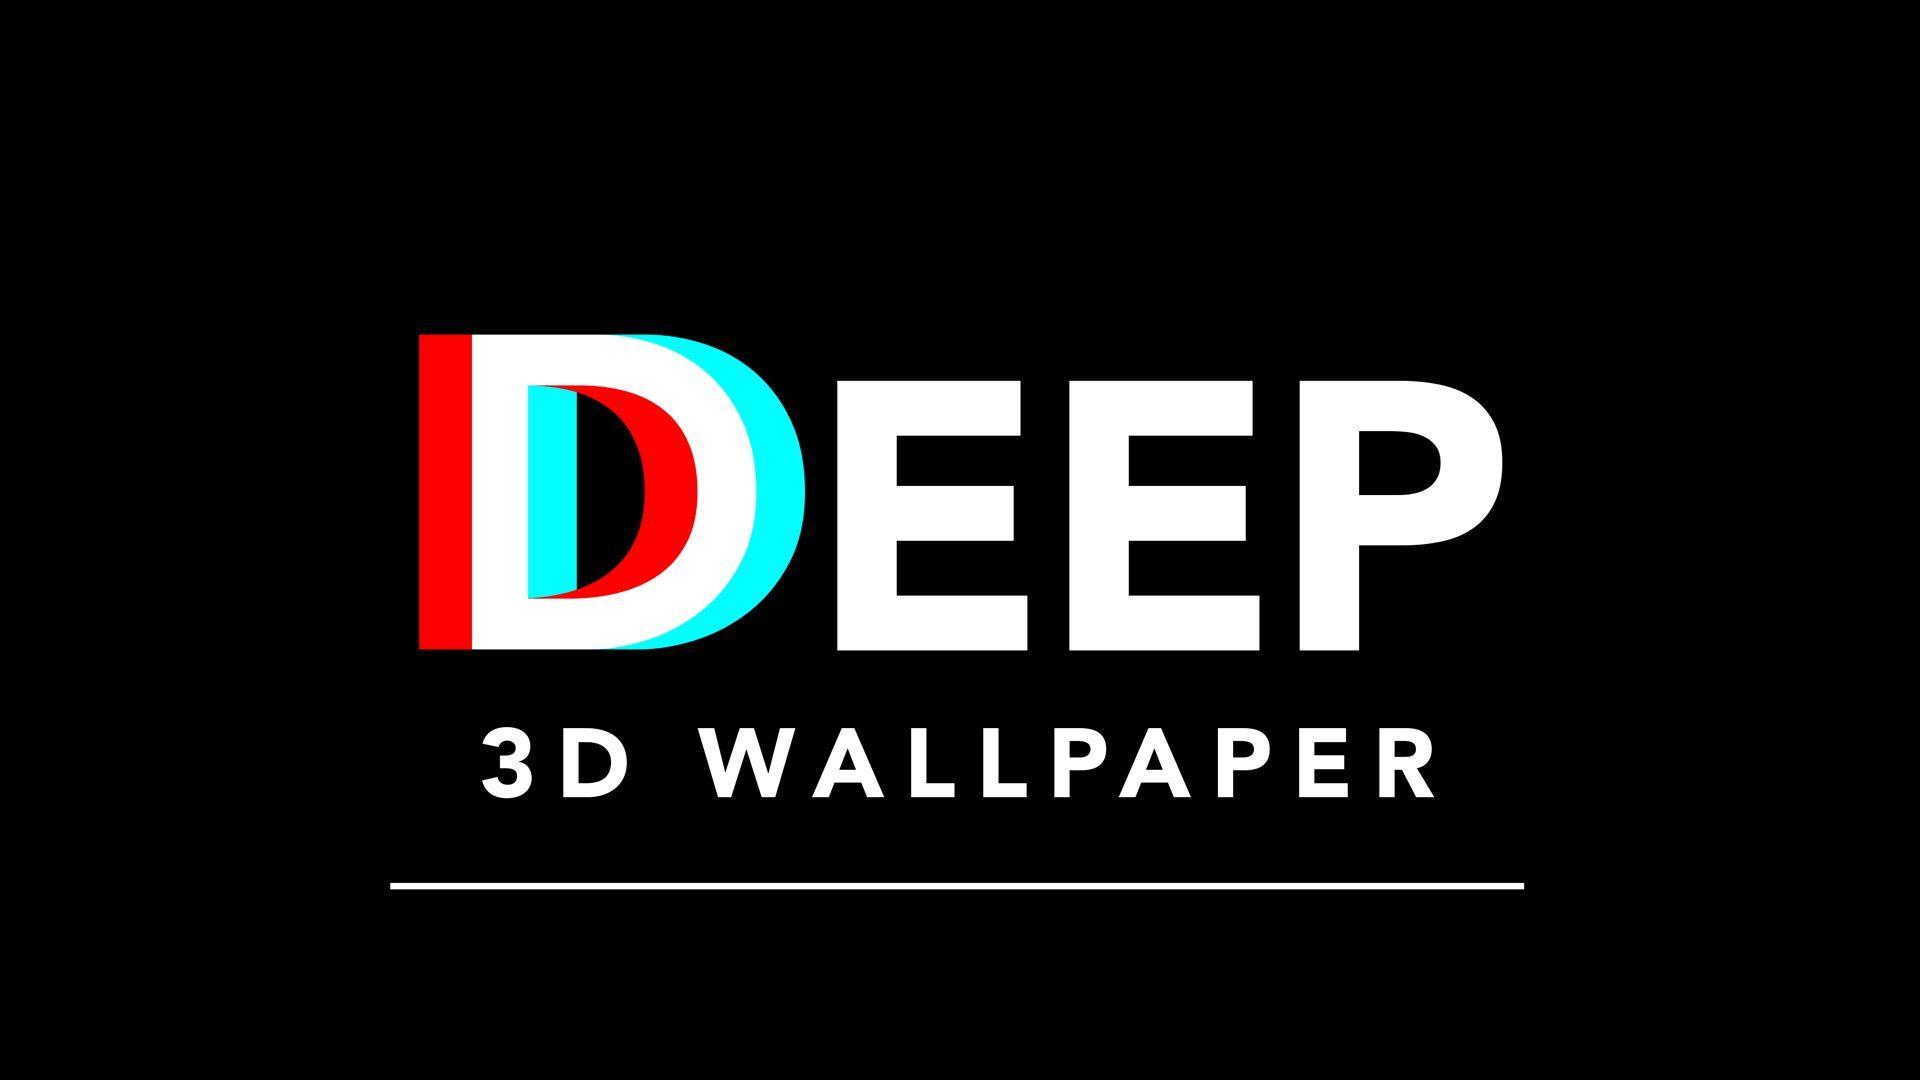 DEEP 3D Wallpaper Debuts at ICFF 2015